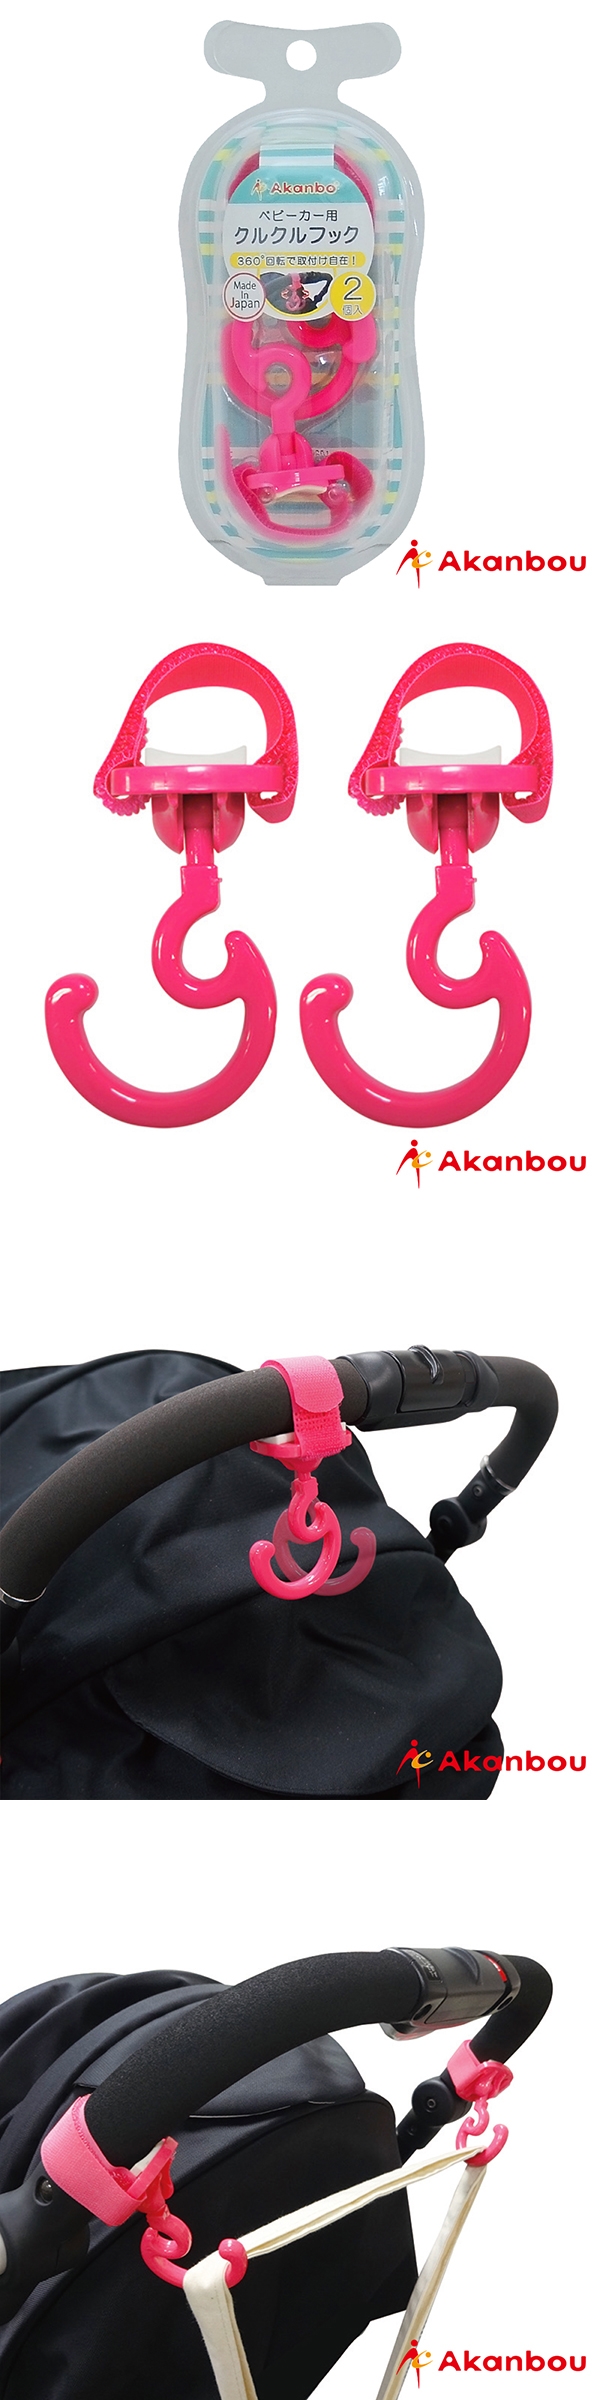 Akanbou-日製360゜旋轉掛勾2入(粉紅)AK335951